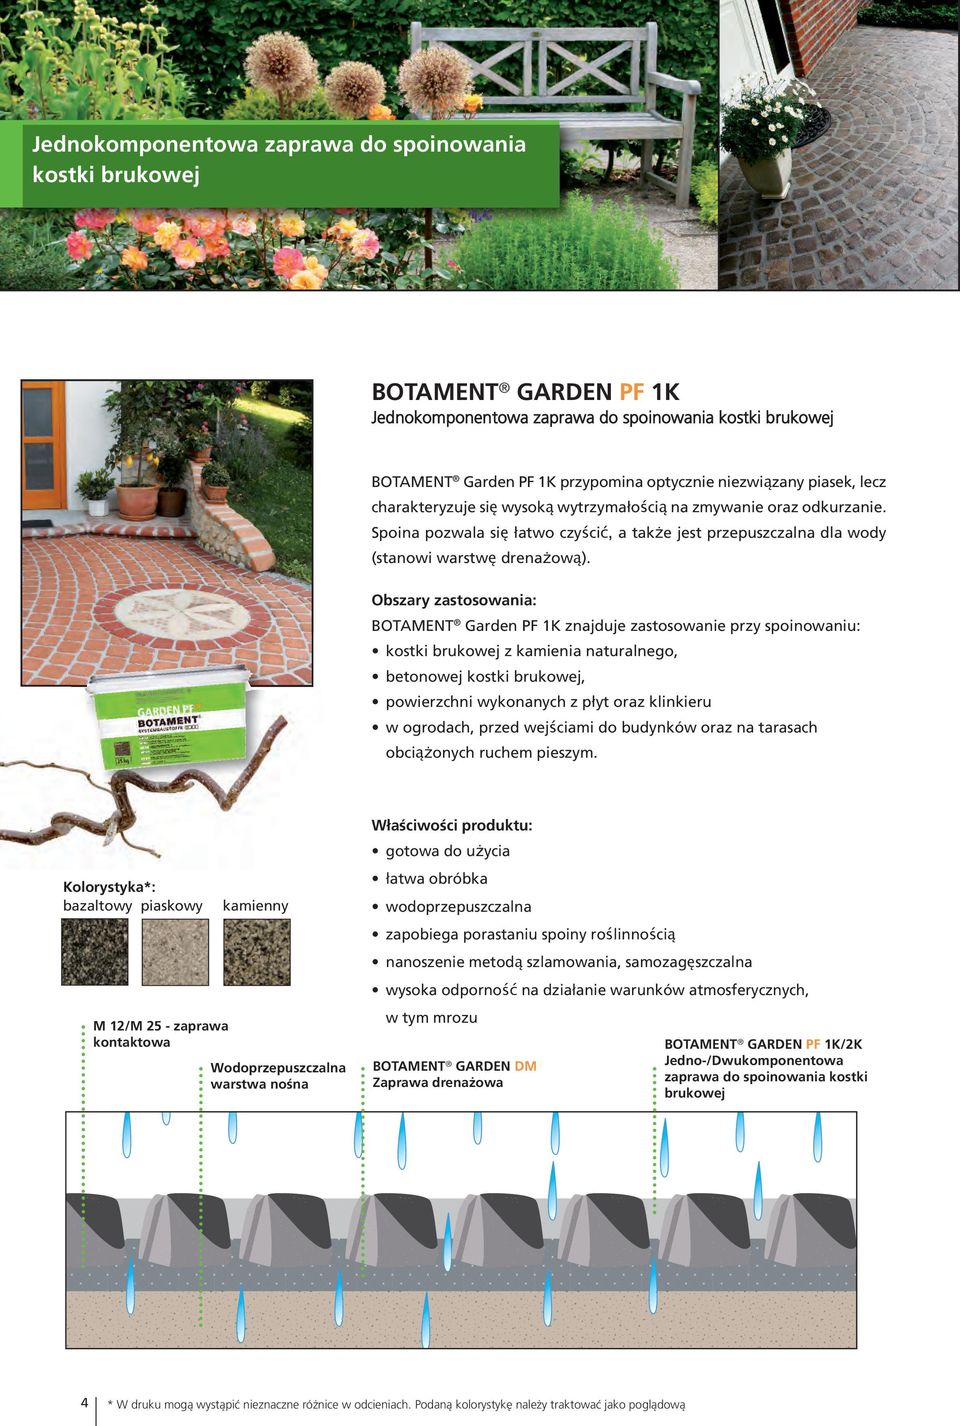 Obszary zastosowania: BOTAMENT Garden PF 1K znajduje zastosowanie przy spoinowaniu: kostki brukowej z kamienia naturalnego, betonowej kostki brukowej, powierzchni wykonanych z płyt oraz klinkieru w